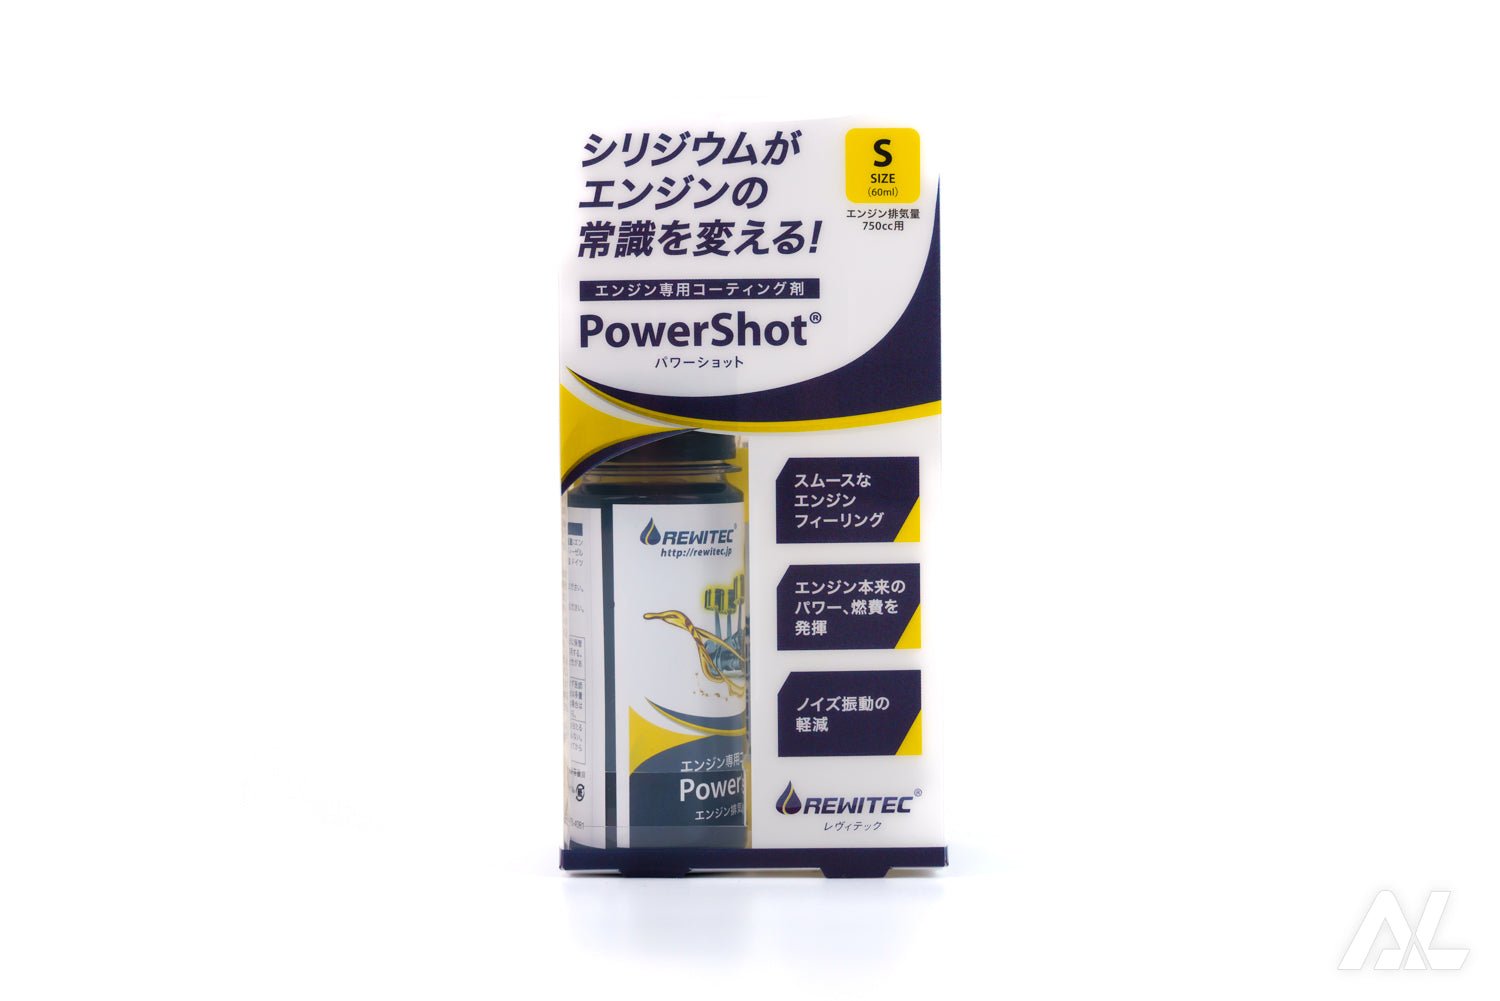 【公認】S 2本 新品 REWITEC PowerShot S レビテック レヴィテック メンテナンス用品